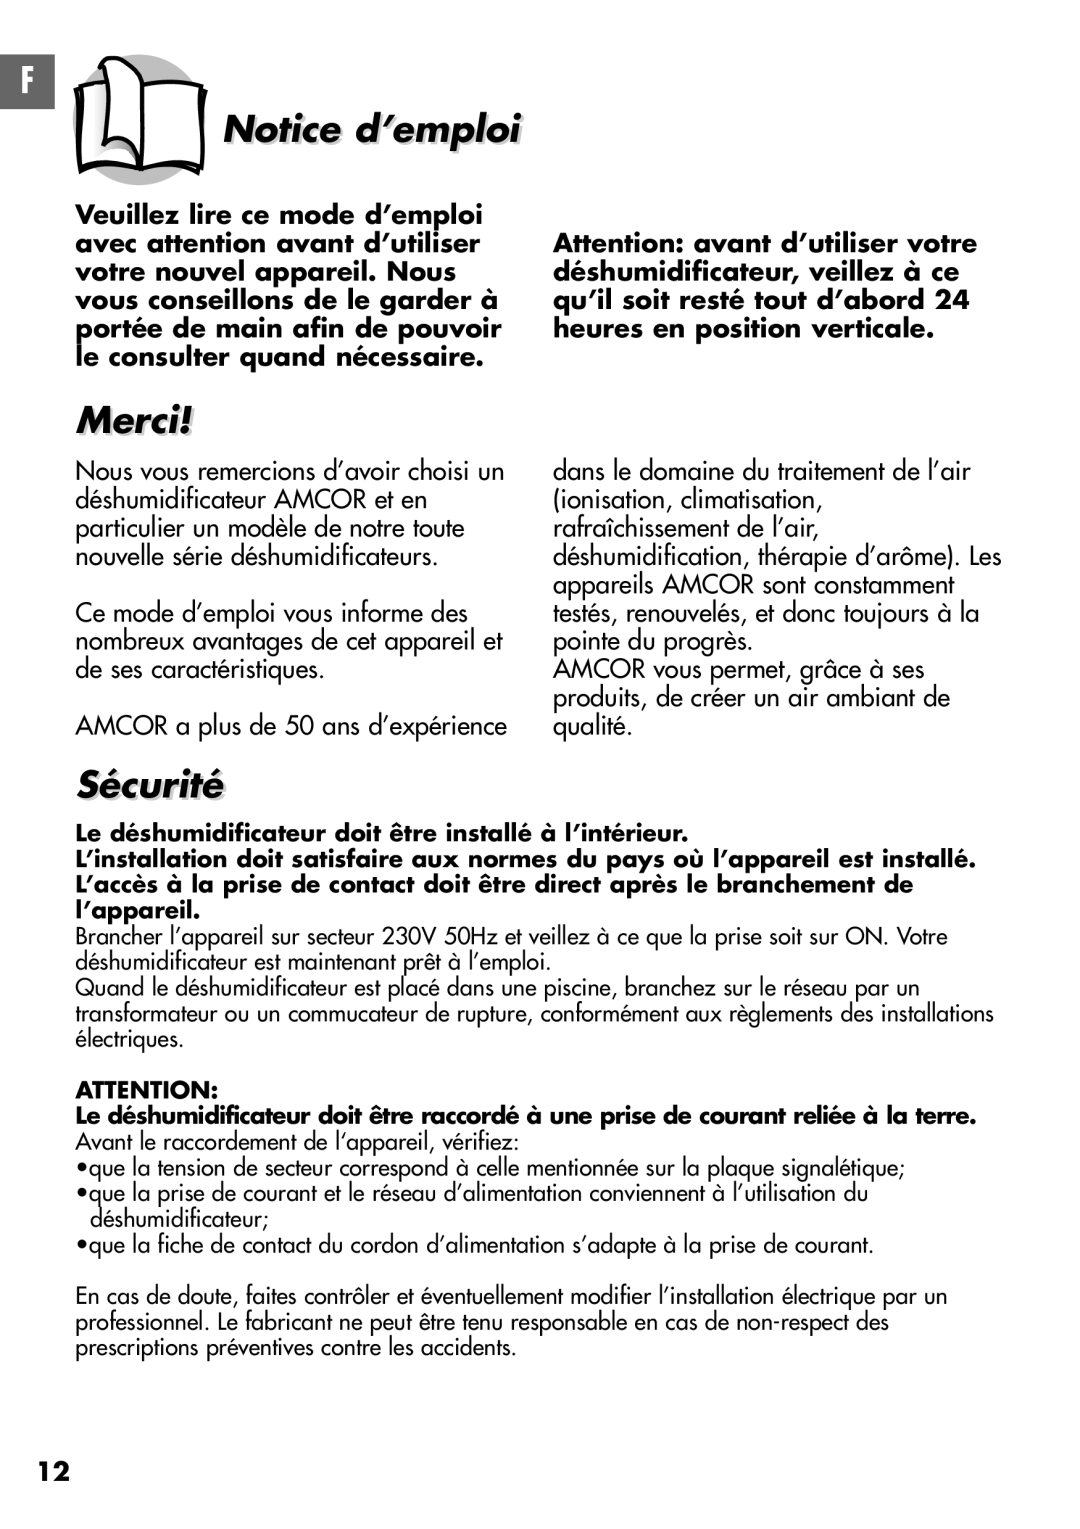 Amcor D850E, D950E instruction manual Notice d’emploi, Merci, Sécurité 